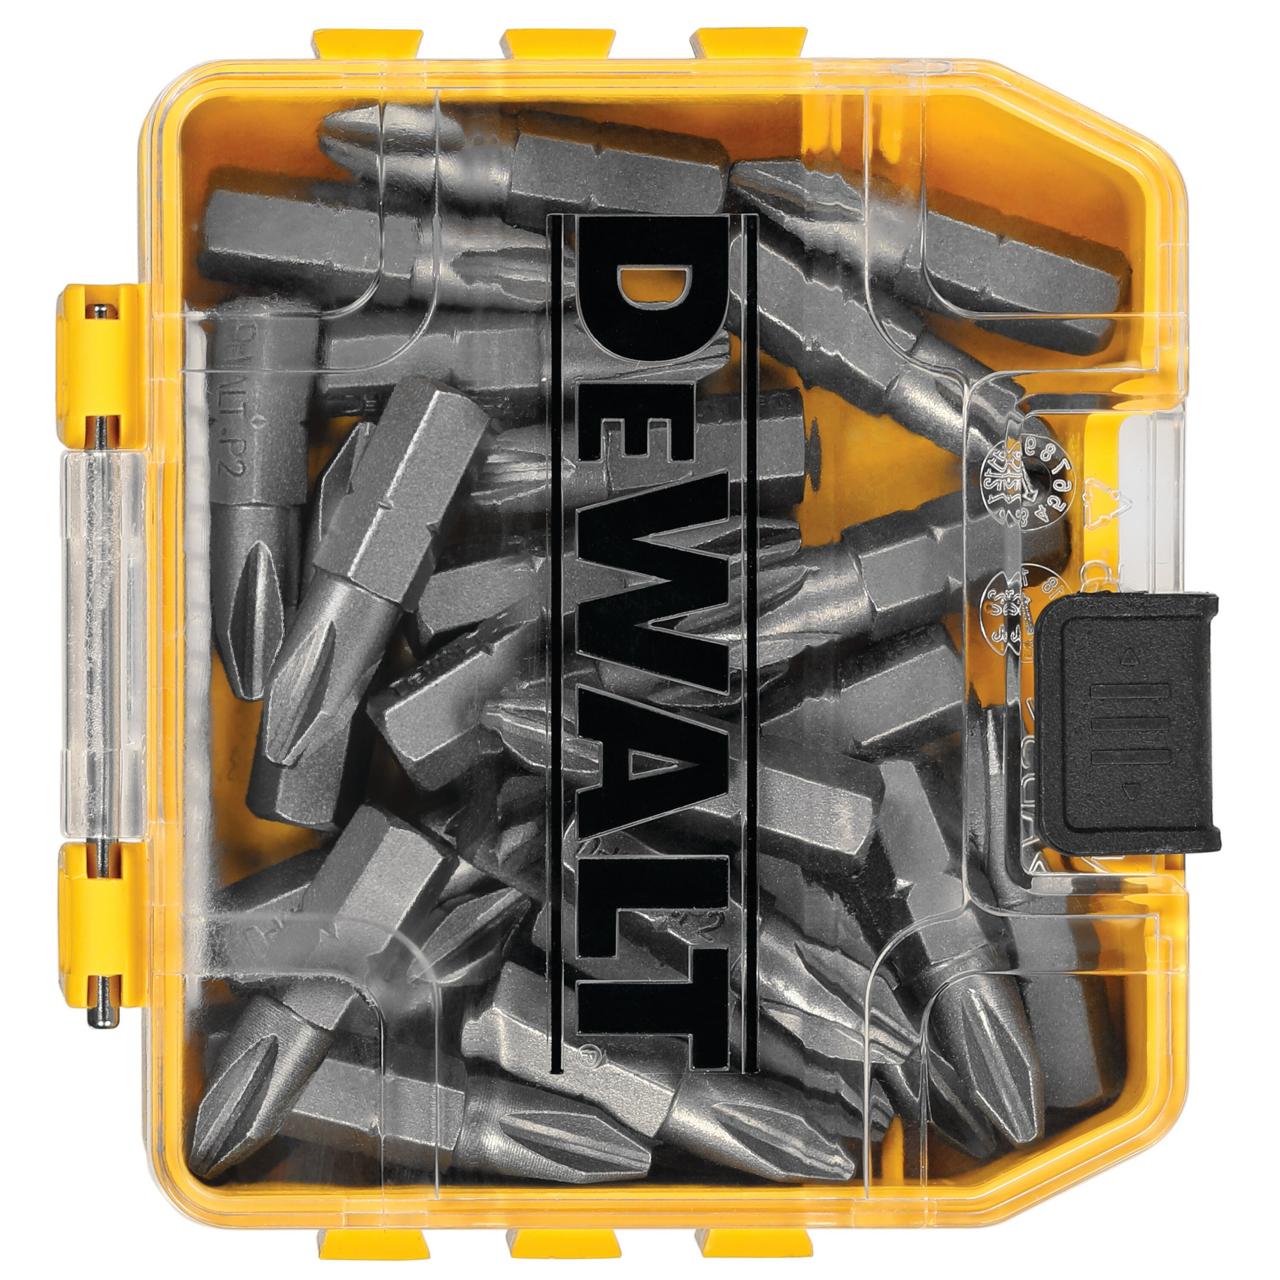 45 Pc. Screwdriving Set with Tough Case® - DW2166 | DEWALT